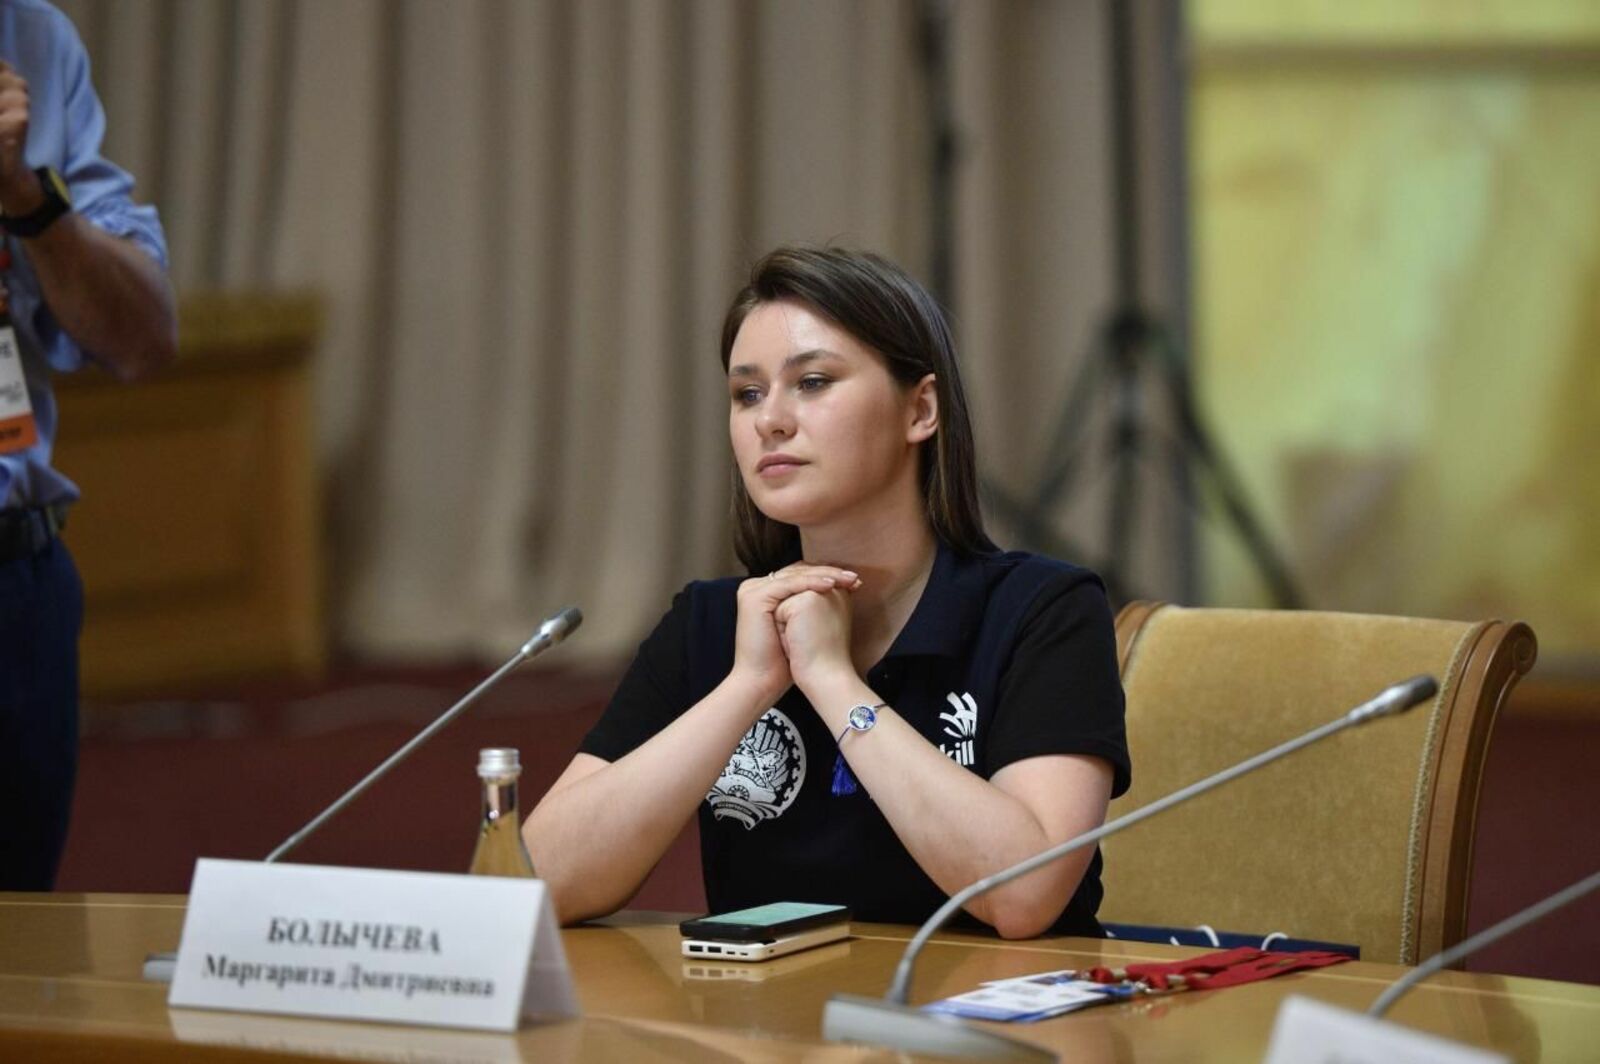 Маргарита Болычева: в Башкирии намерены развивать профессиональные компетенции в области экспорта